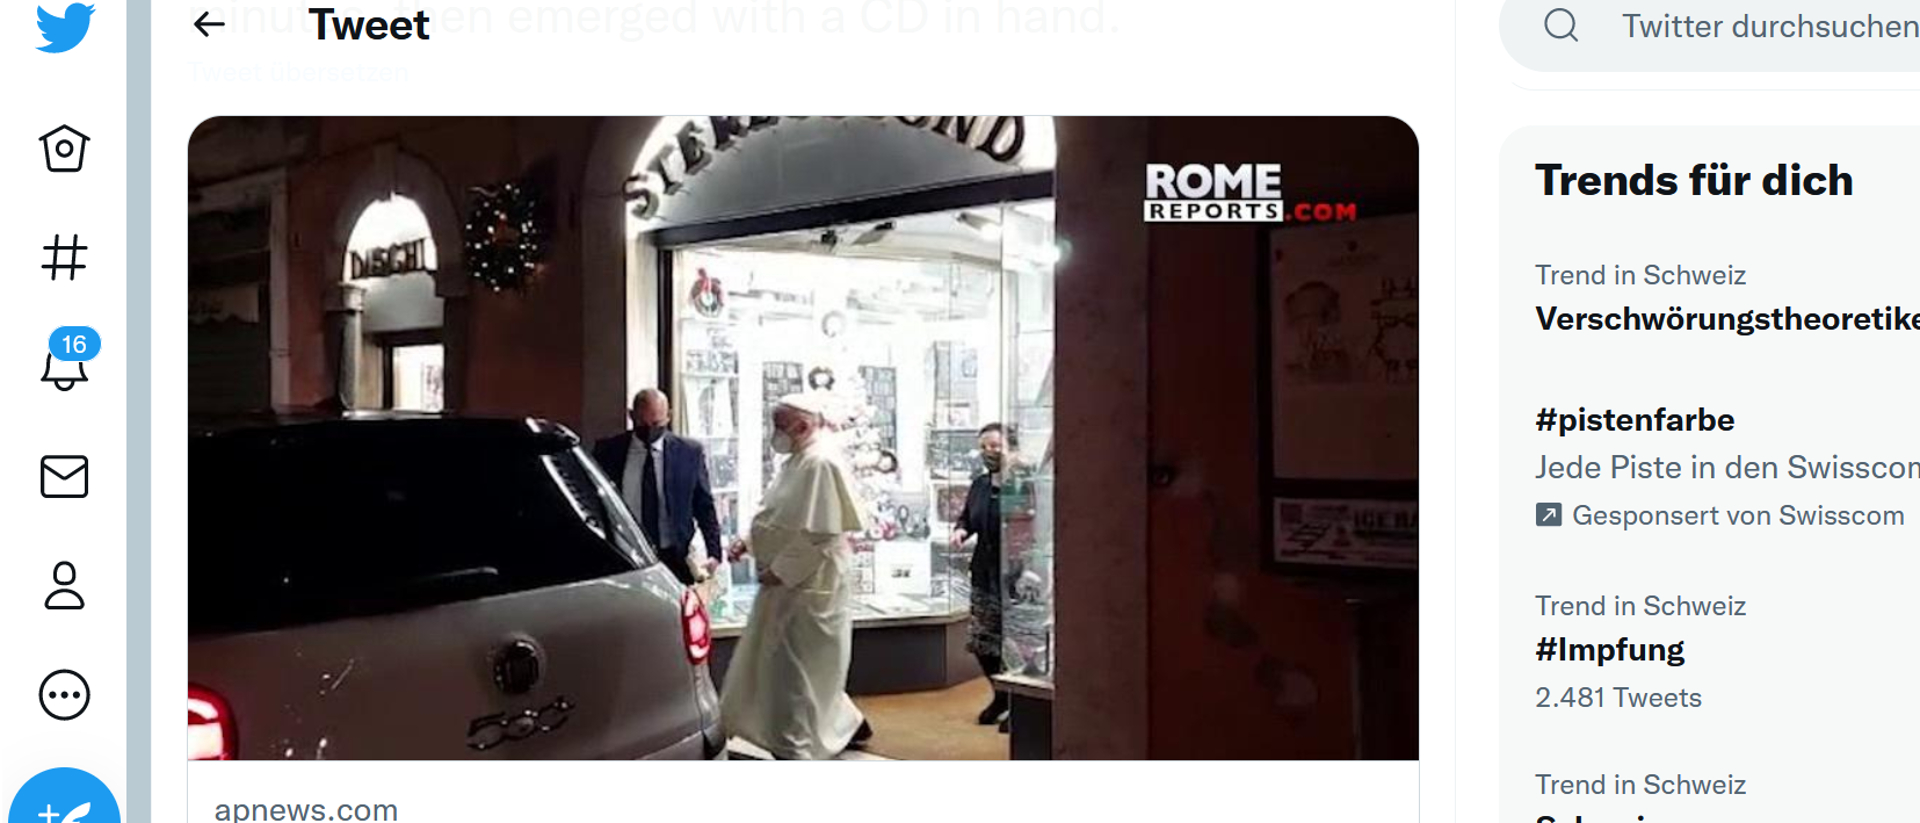 Papst beim Verlassen des Plattenladens: Der Schnappschuss hat sich auf den sozialen Medien verbreitet.